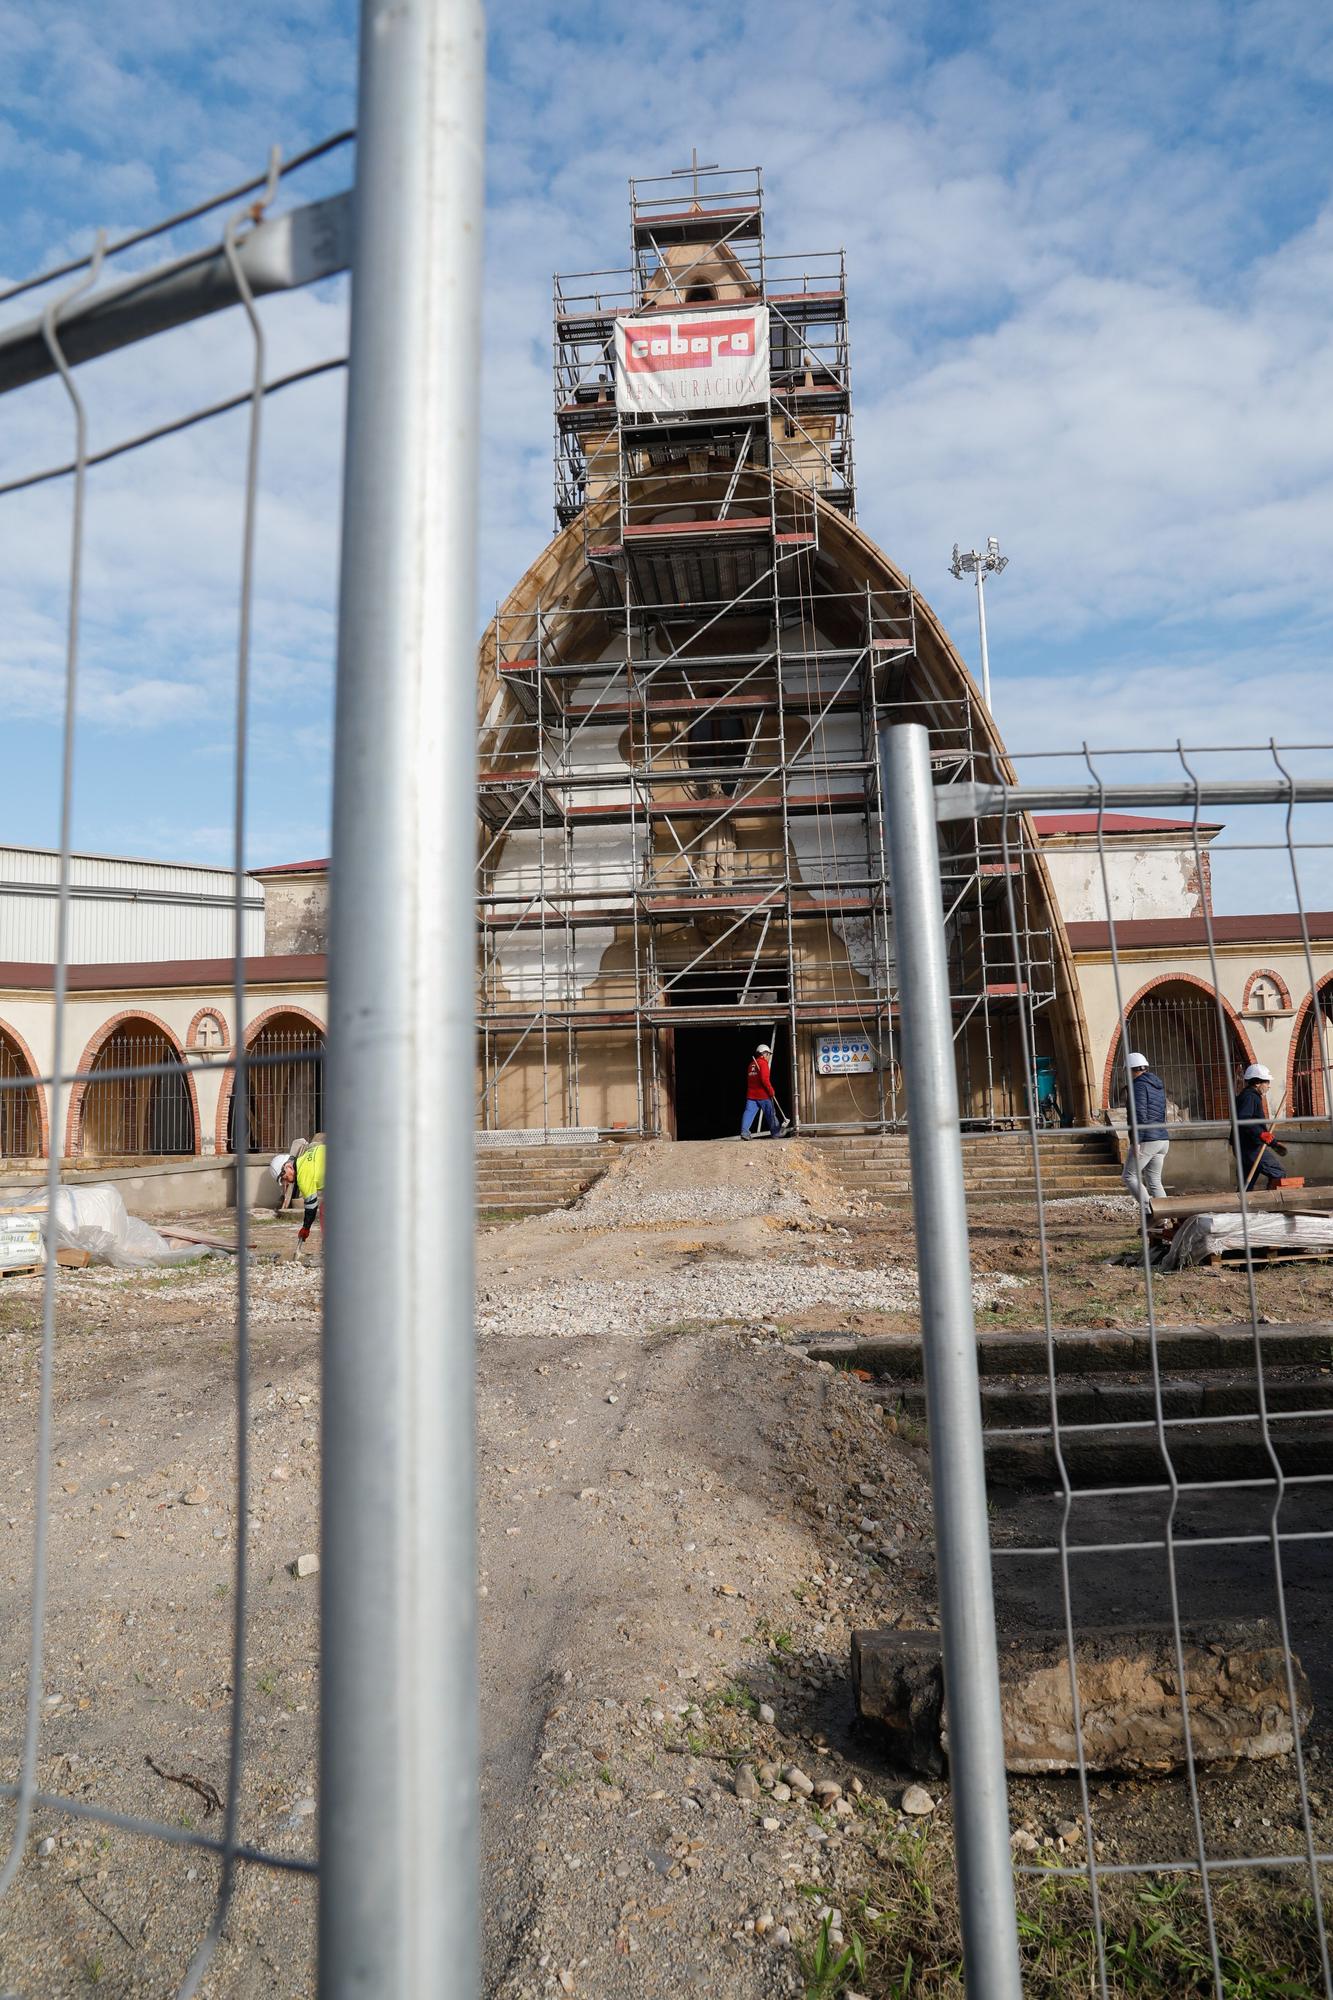 Las obras de conservación de la iglesia de San Juan, a paso acelerado